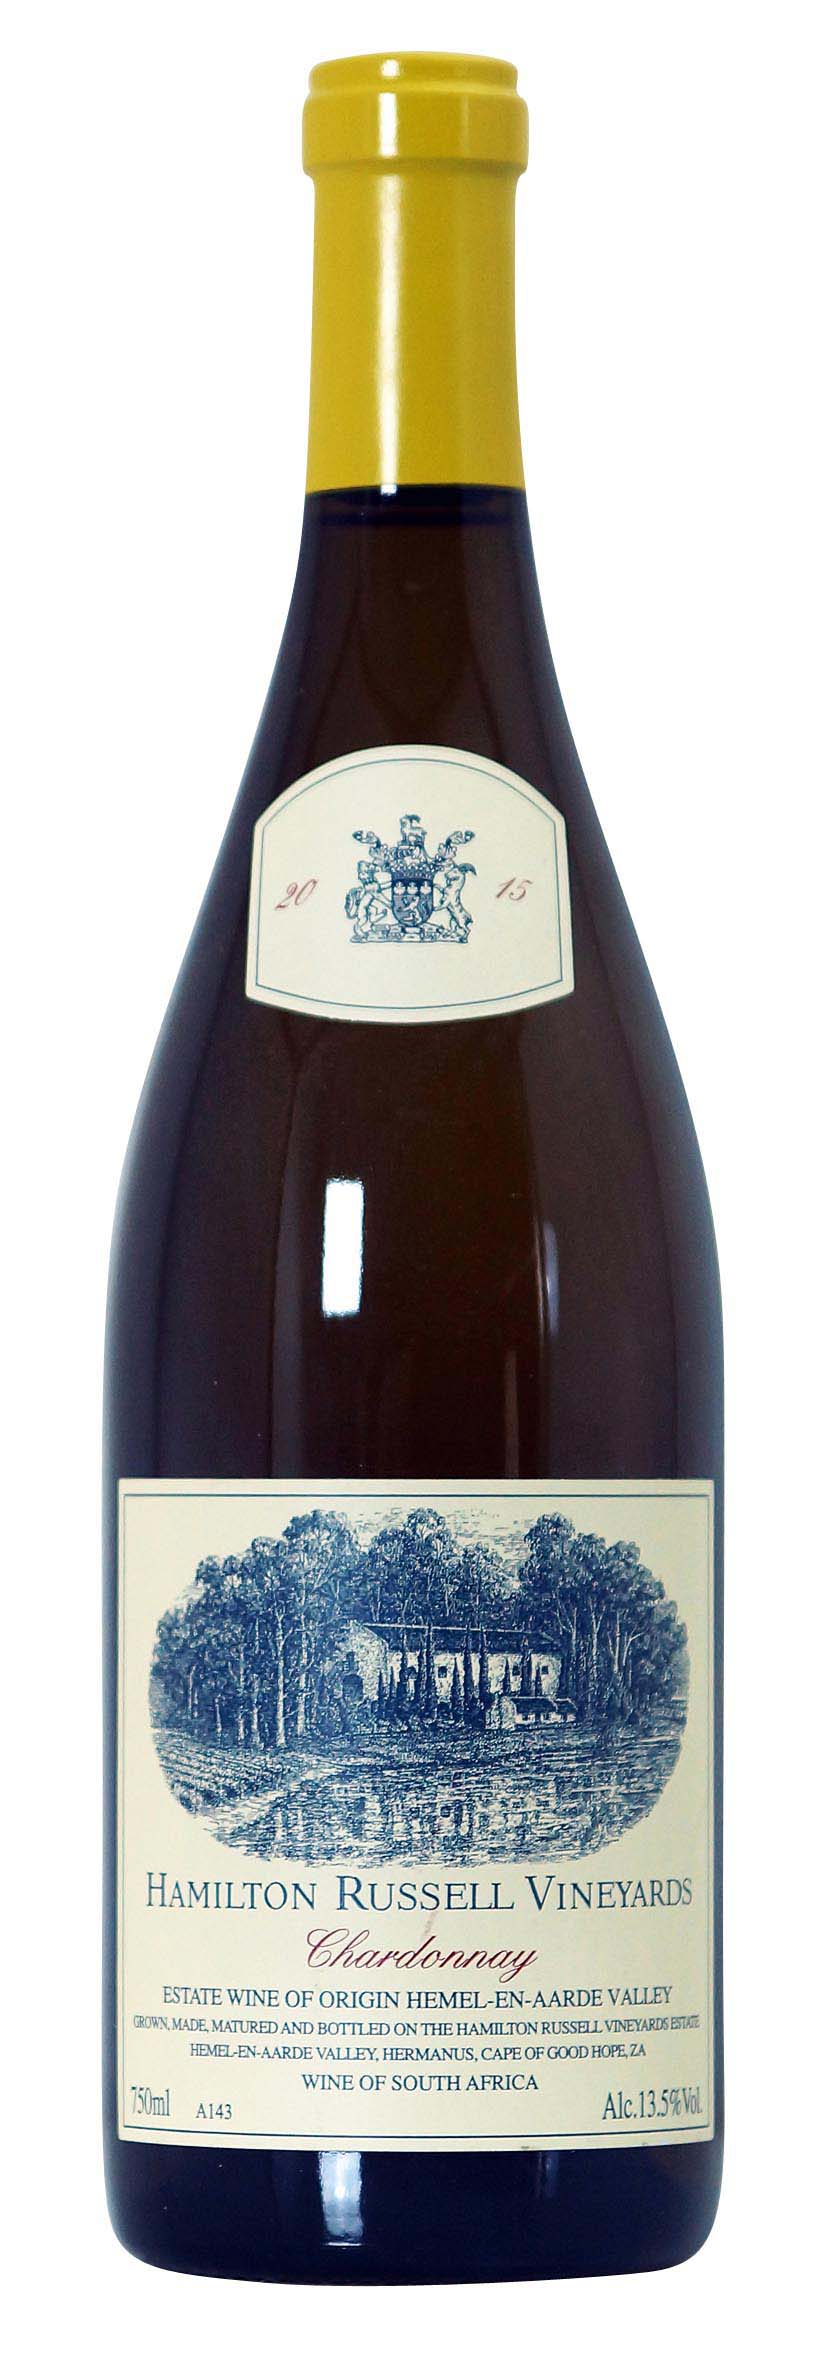 Hemel-en-Aarde Valley Chardonnay 2015